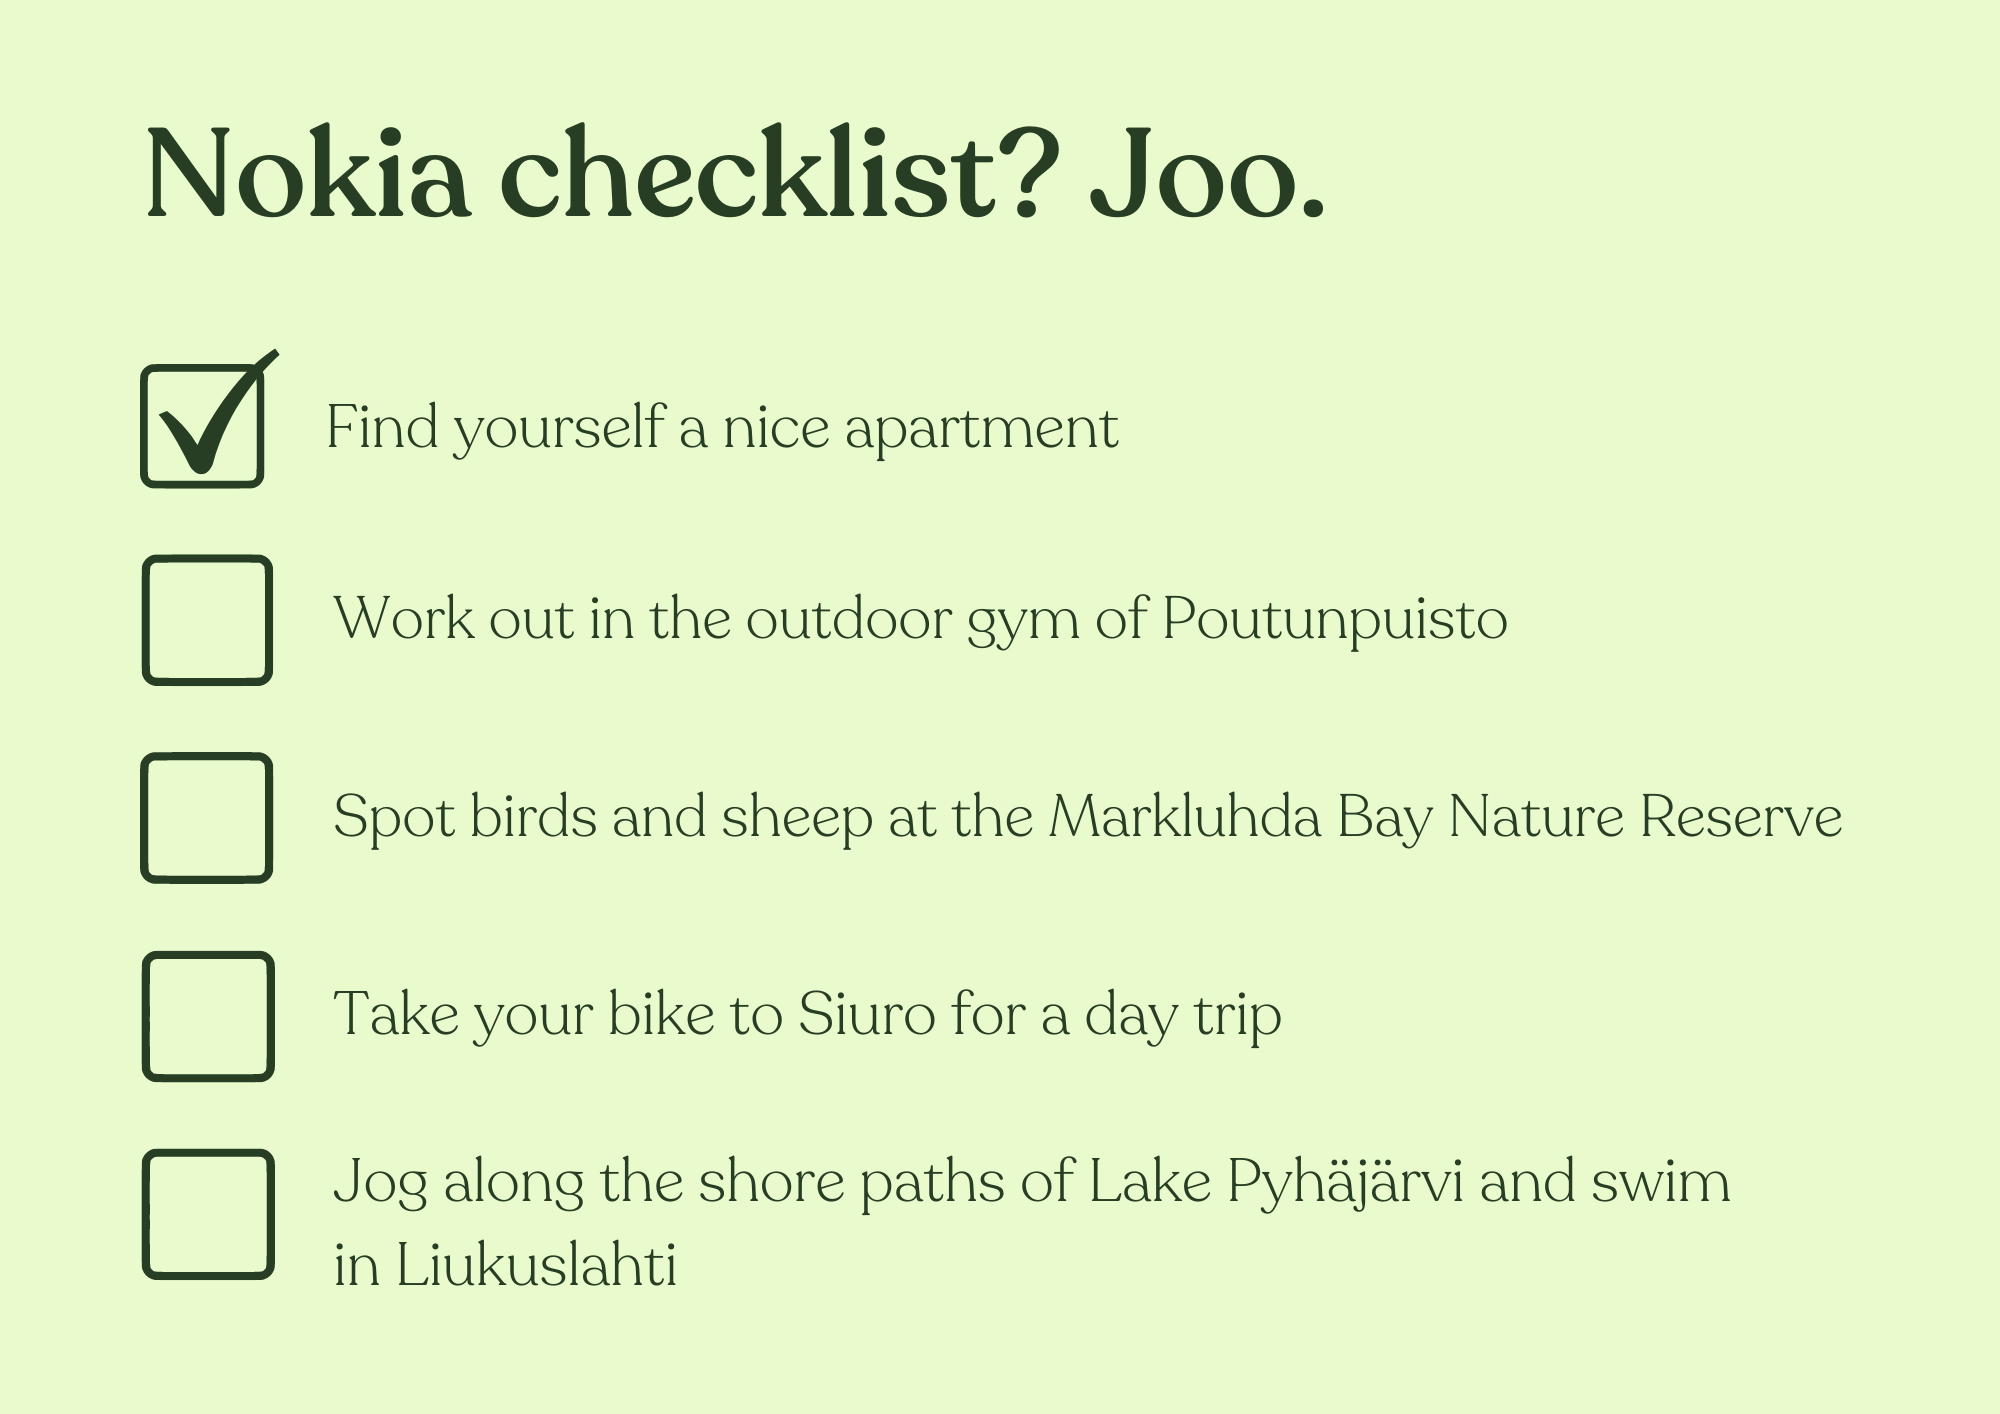 Nokia checklist